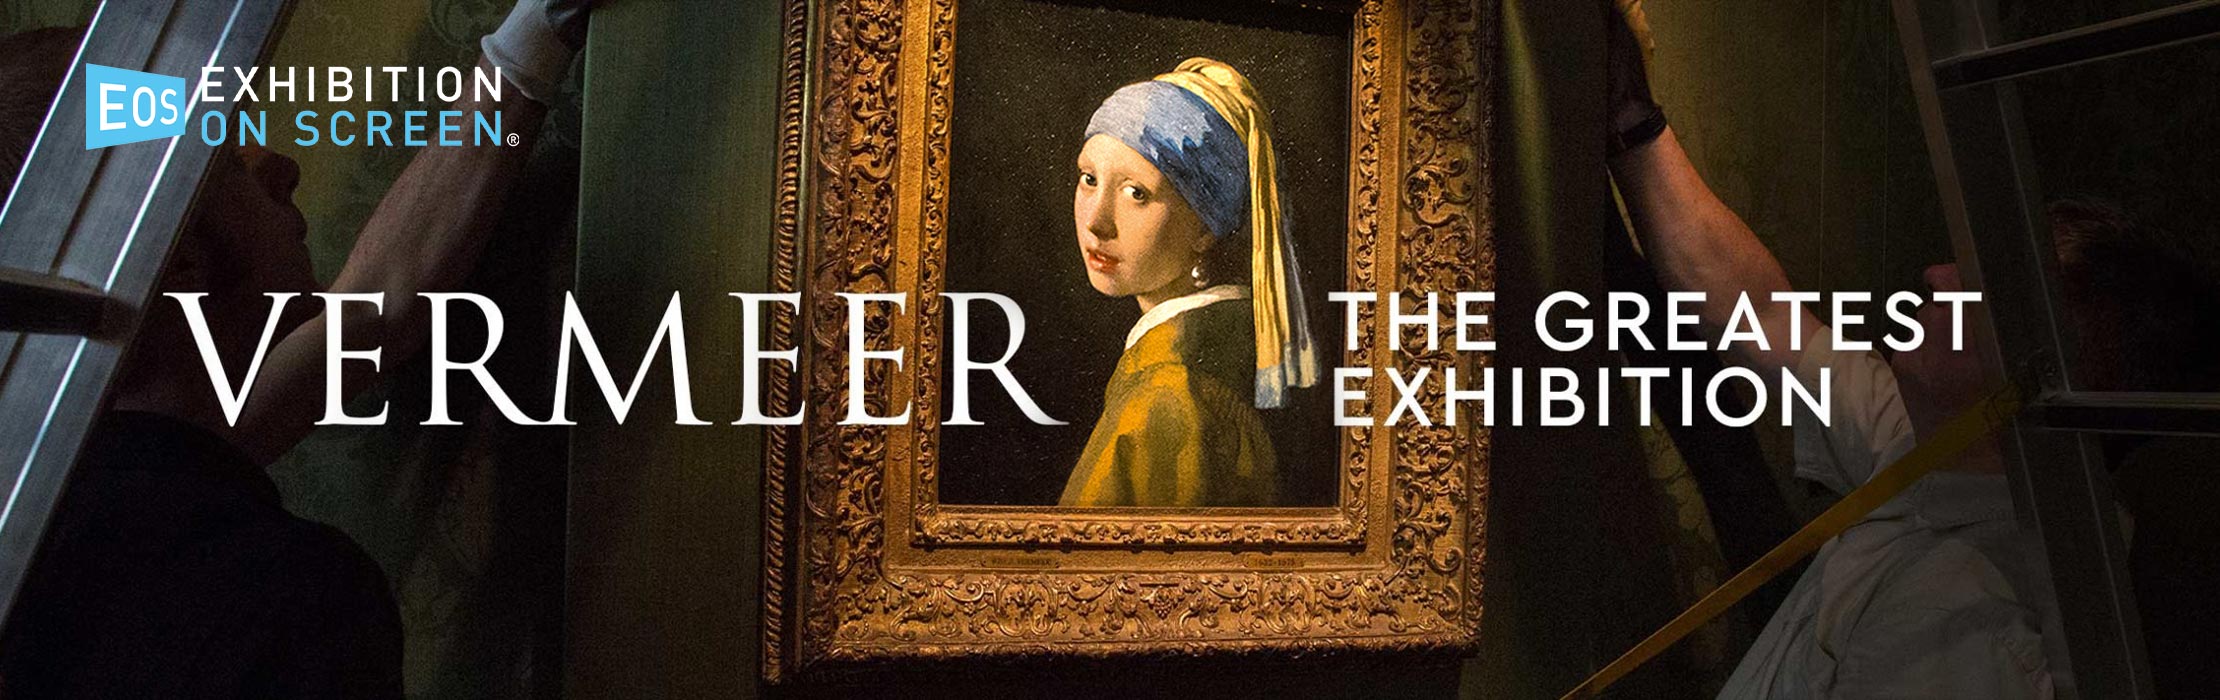 EOS Vermeer